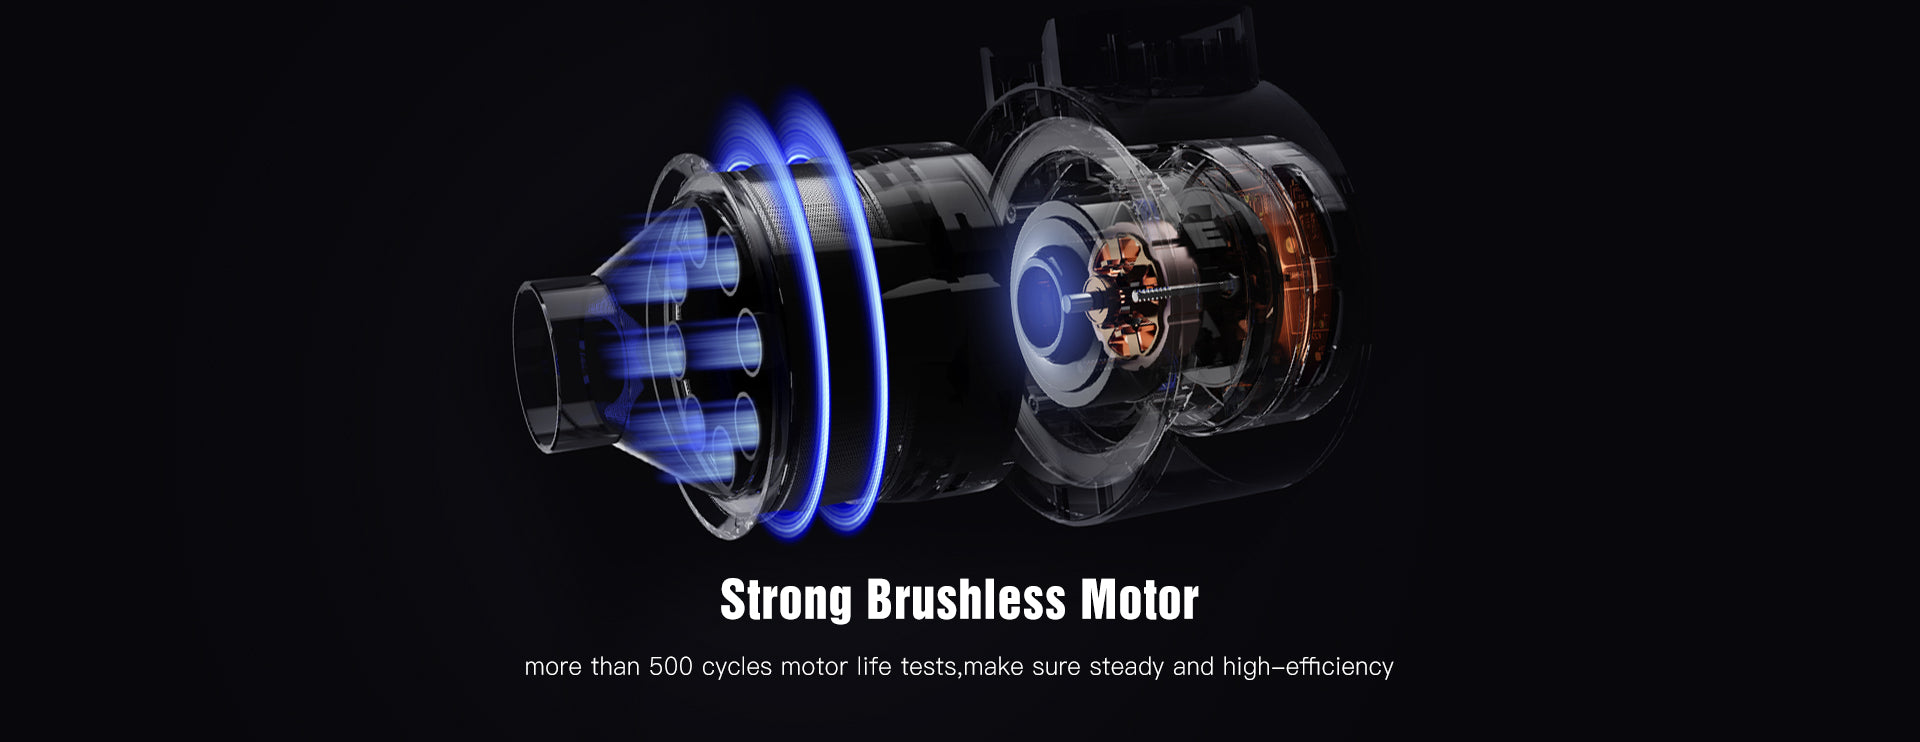 Strong_Brushless_Motor